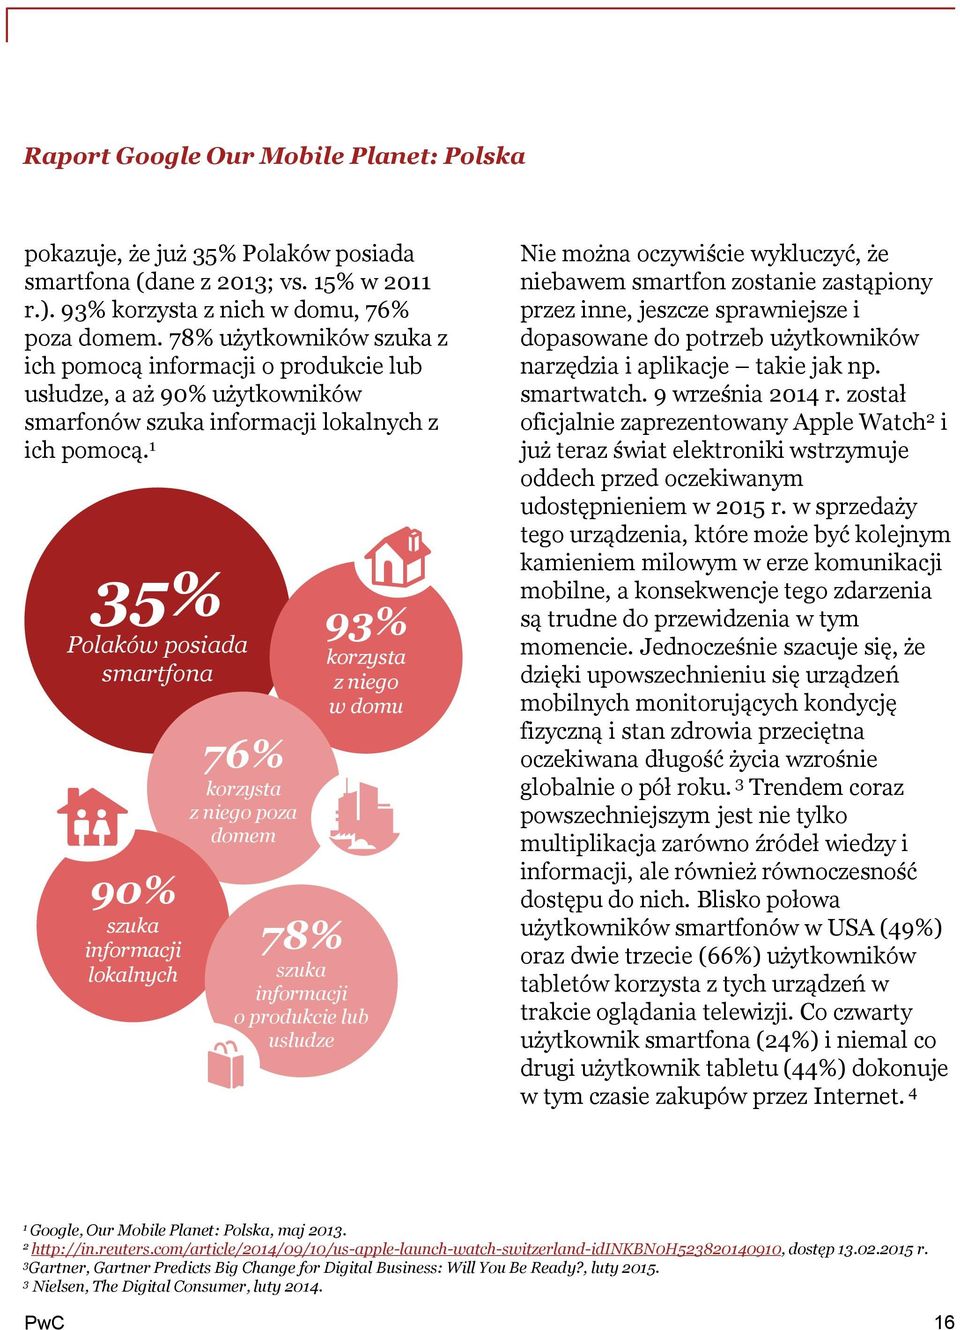 35% Polaków posiada smartfona 90% szuka informacji lokalnych 76% korzysta z niego poza domem 93% korzysta z niego w domu 78% szuka informacji o produkcie lub usłudze Nie można oczywiście wykluczyć,